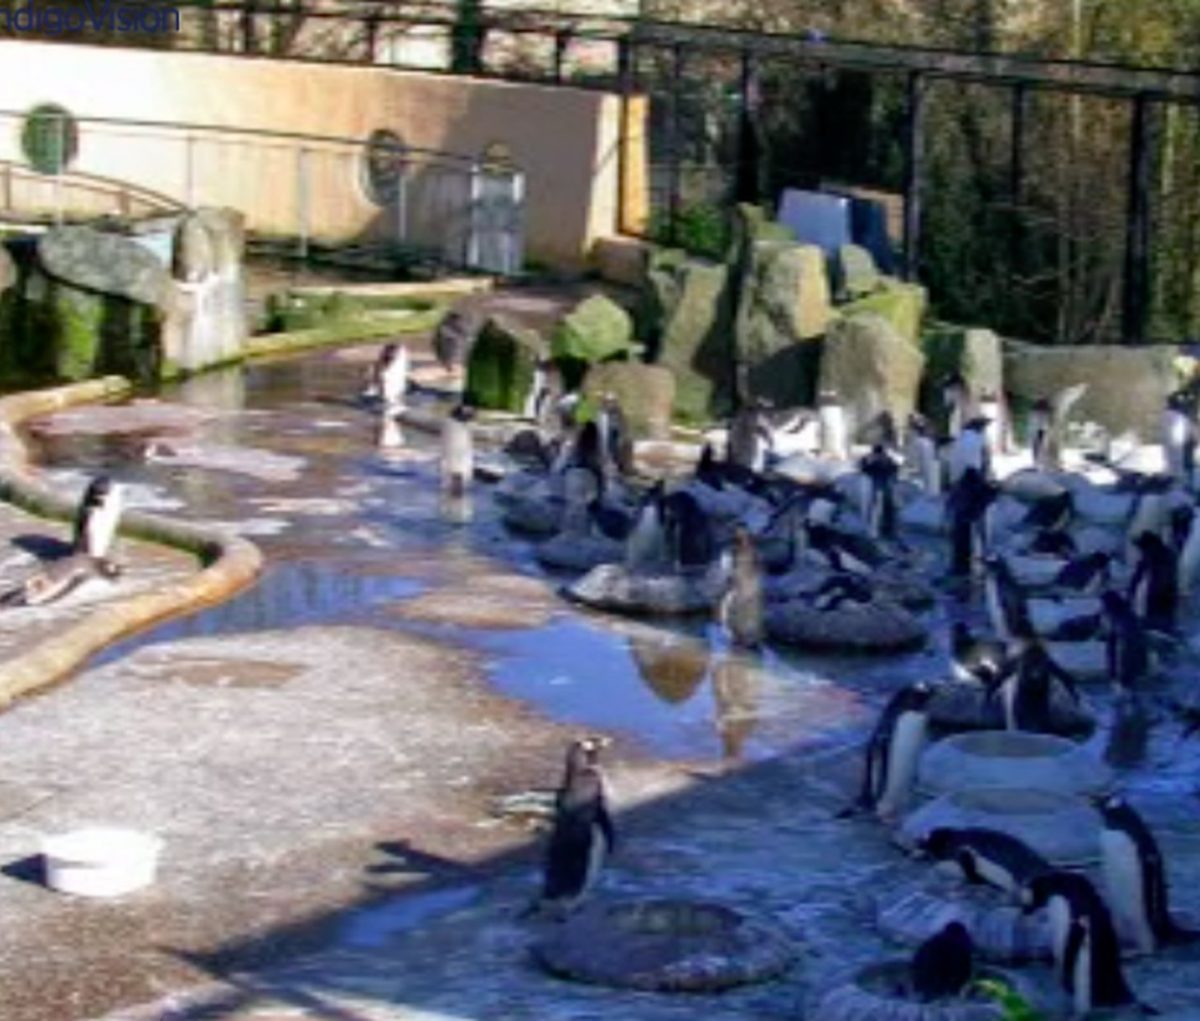 edinburgh zoo webcam